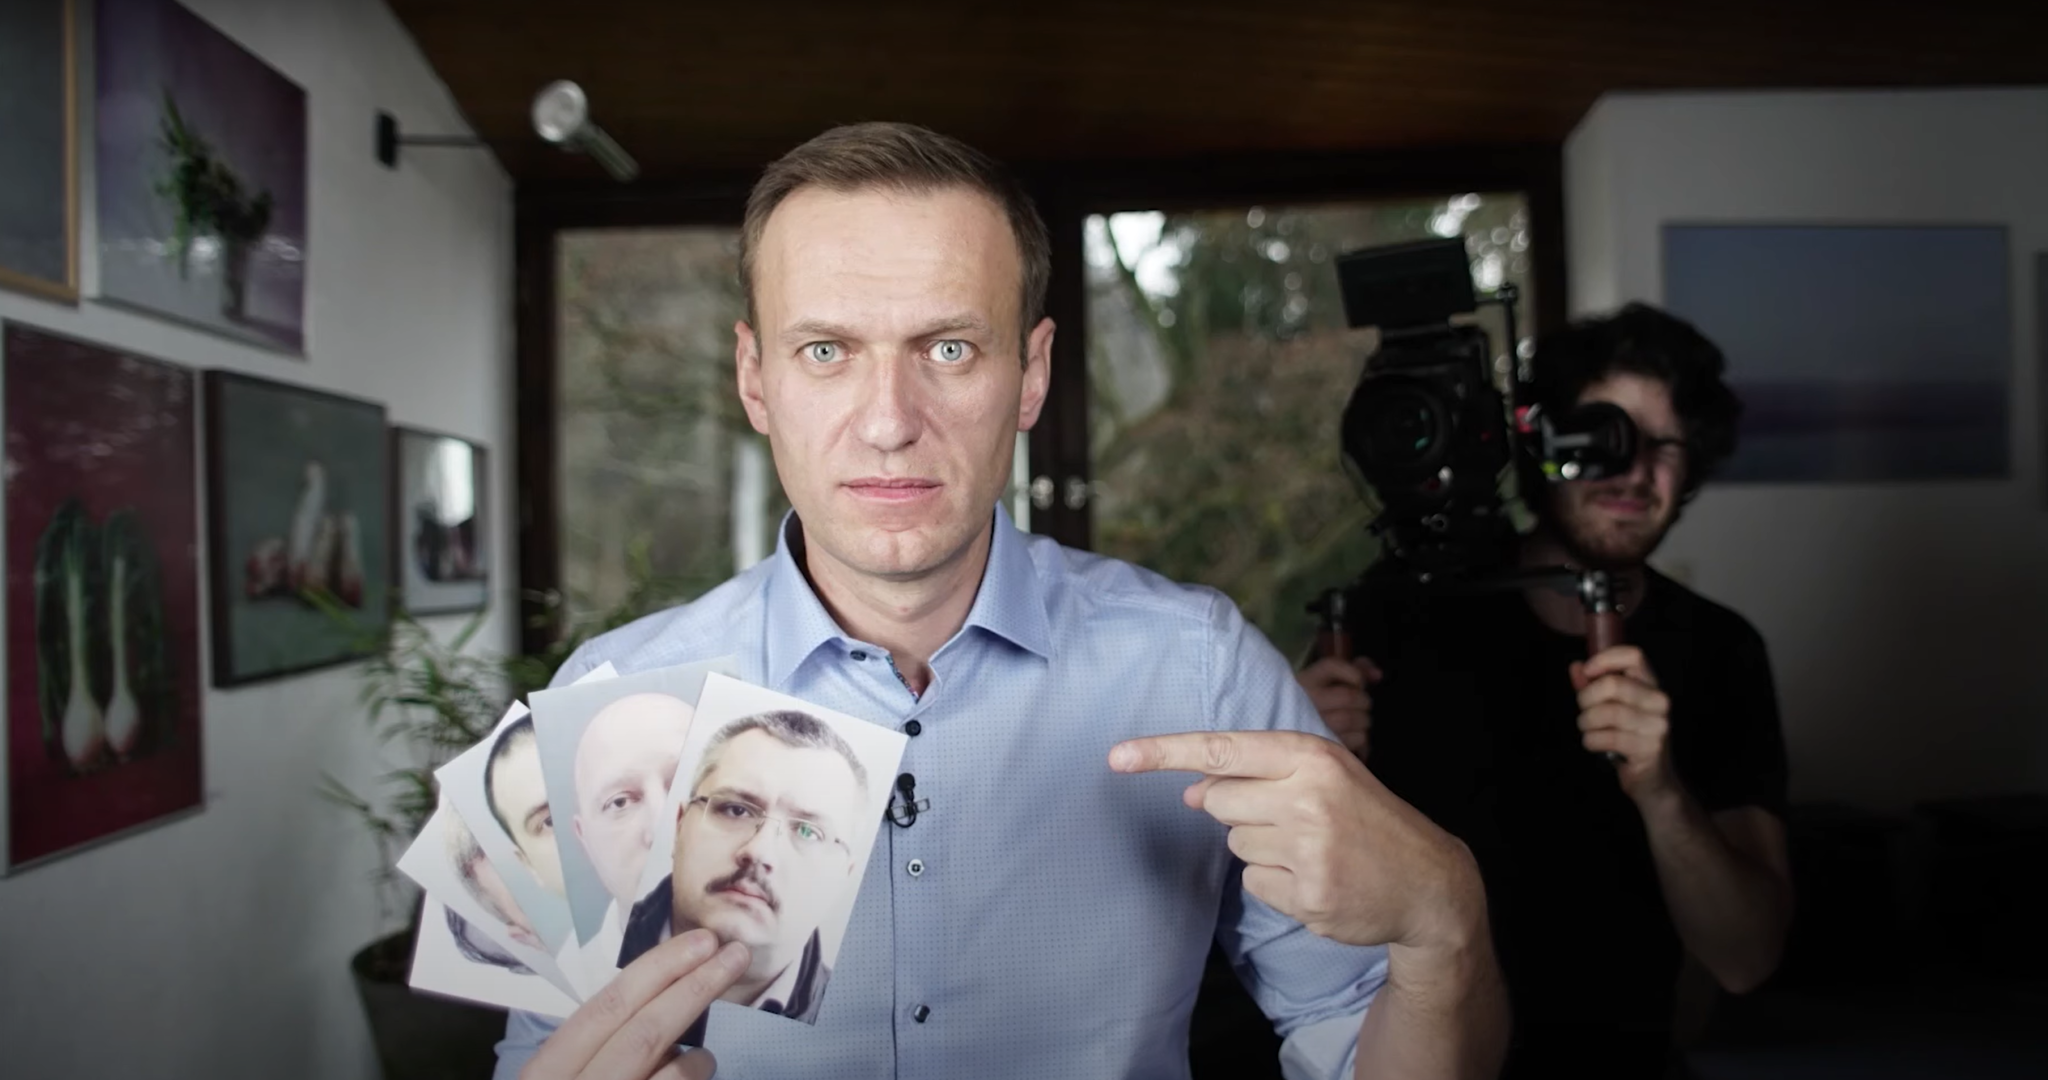 Кадр из фильма "Навальный". Скриншот видео Youtube-канала Sundance Institute